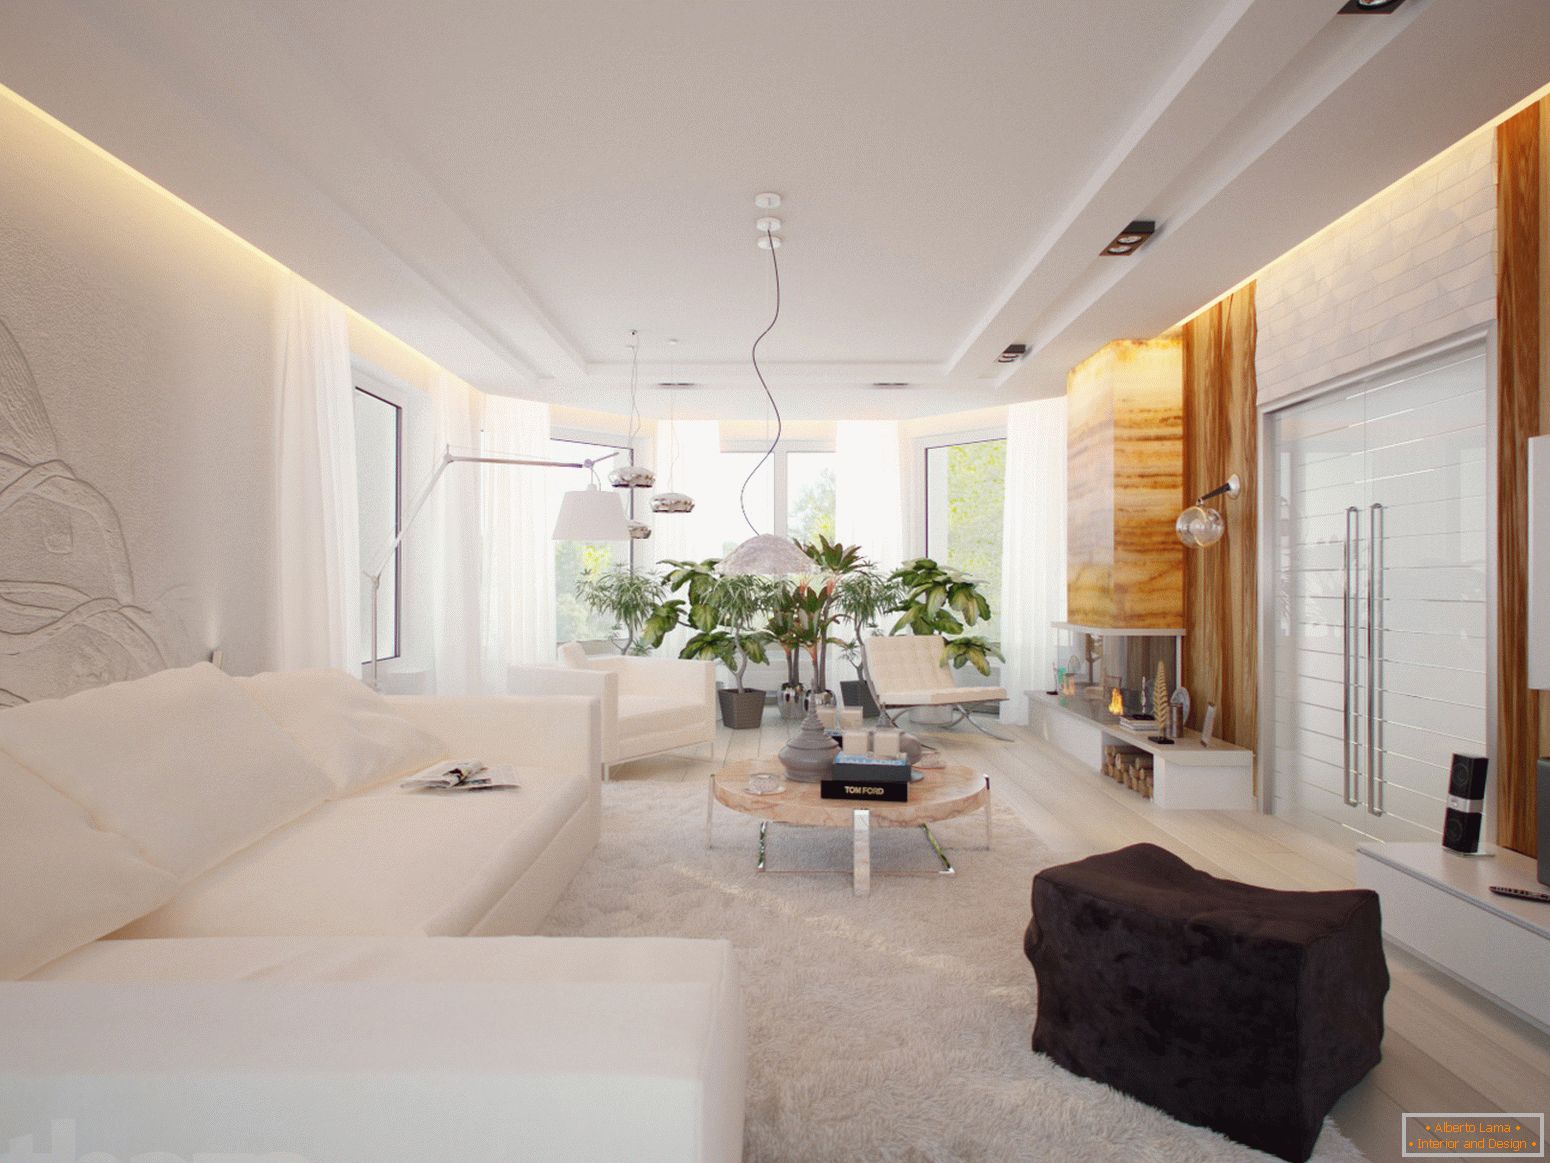 Ein geräumiges und helles Zimmer im minimalistischen Stil ist ein hervorragendes Beispiel für ausgewählte Möbel.